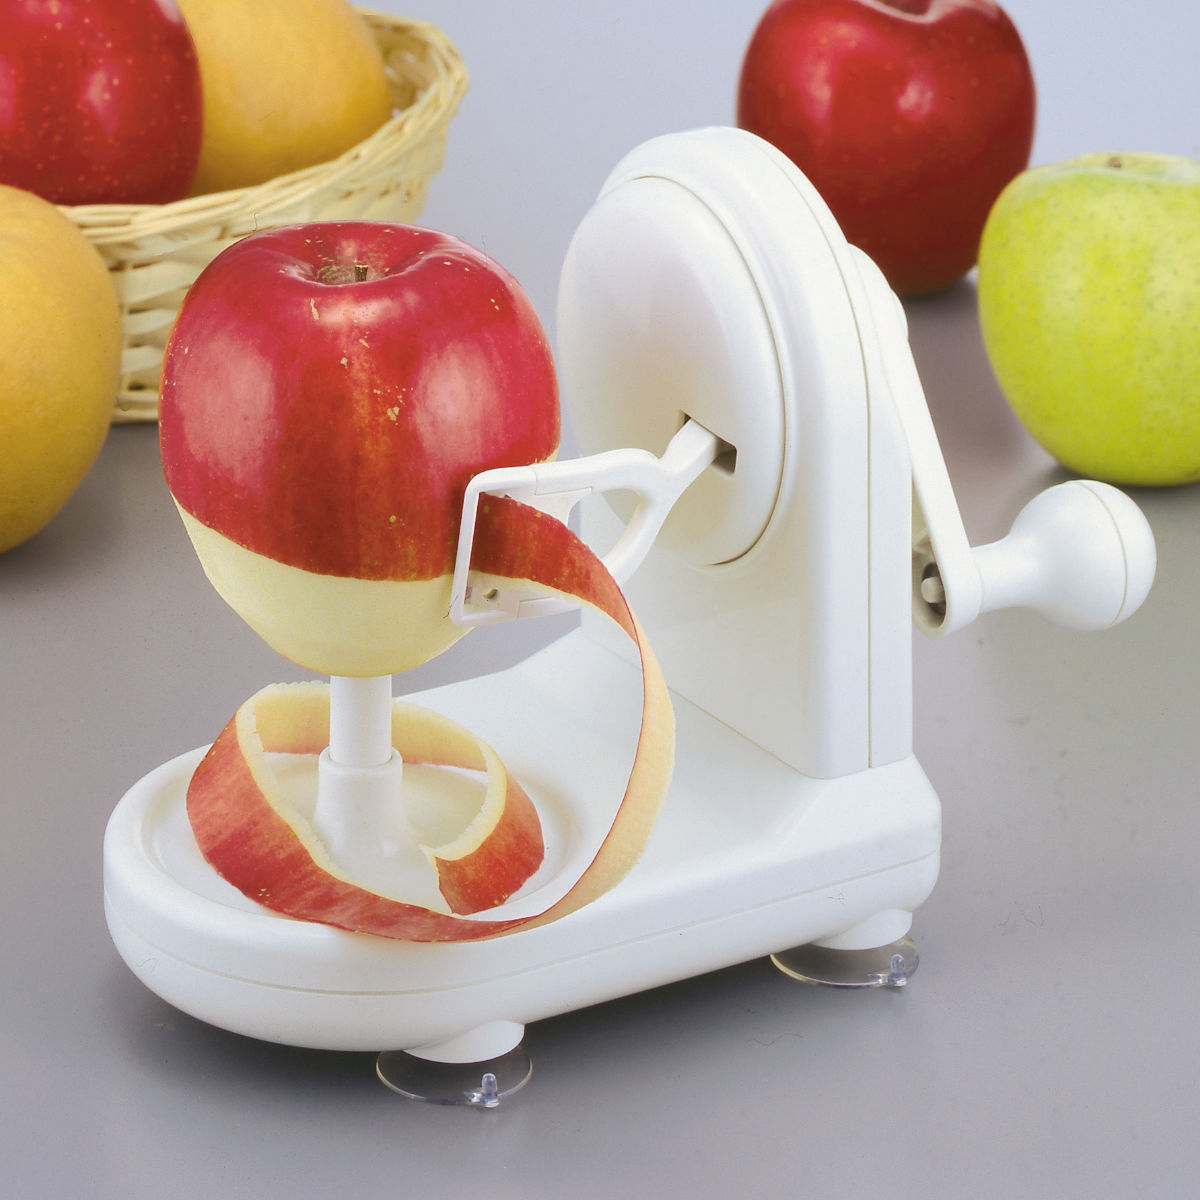 アップルピーラー 回転式ピーラー ピーラー 皮むき器 キッチン 便利グッズ （ りんご皮むき器 皮剥き器 回転式 手動 りんご リンゴ 林檎